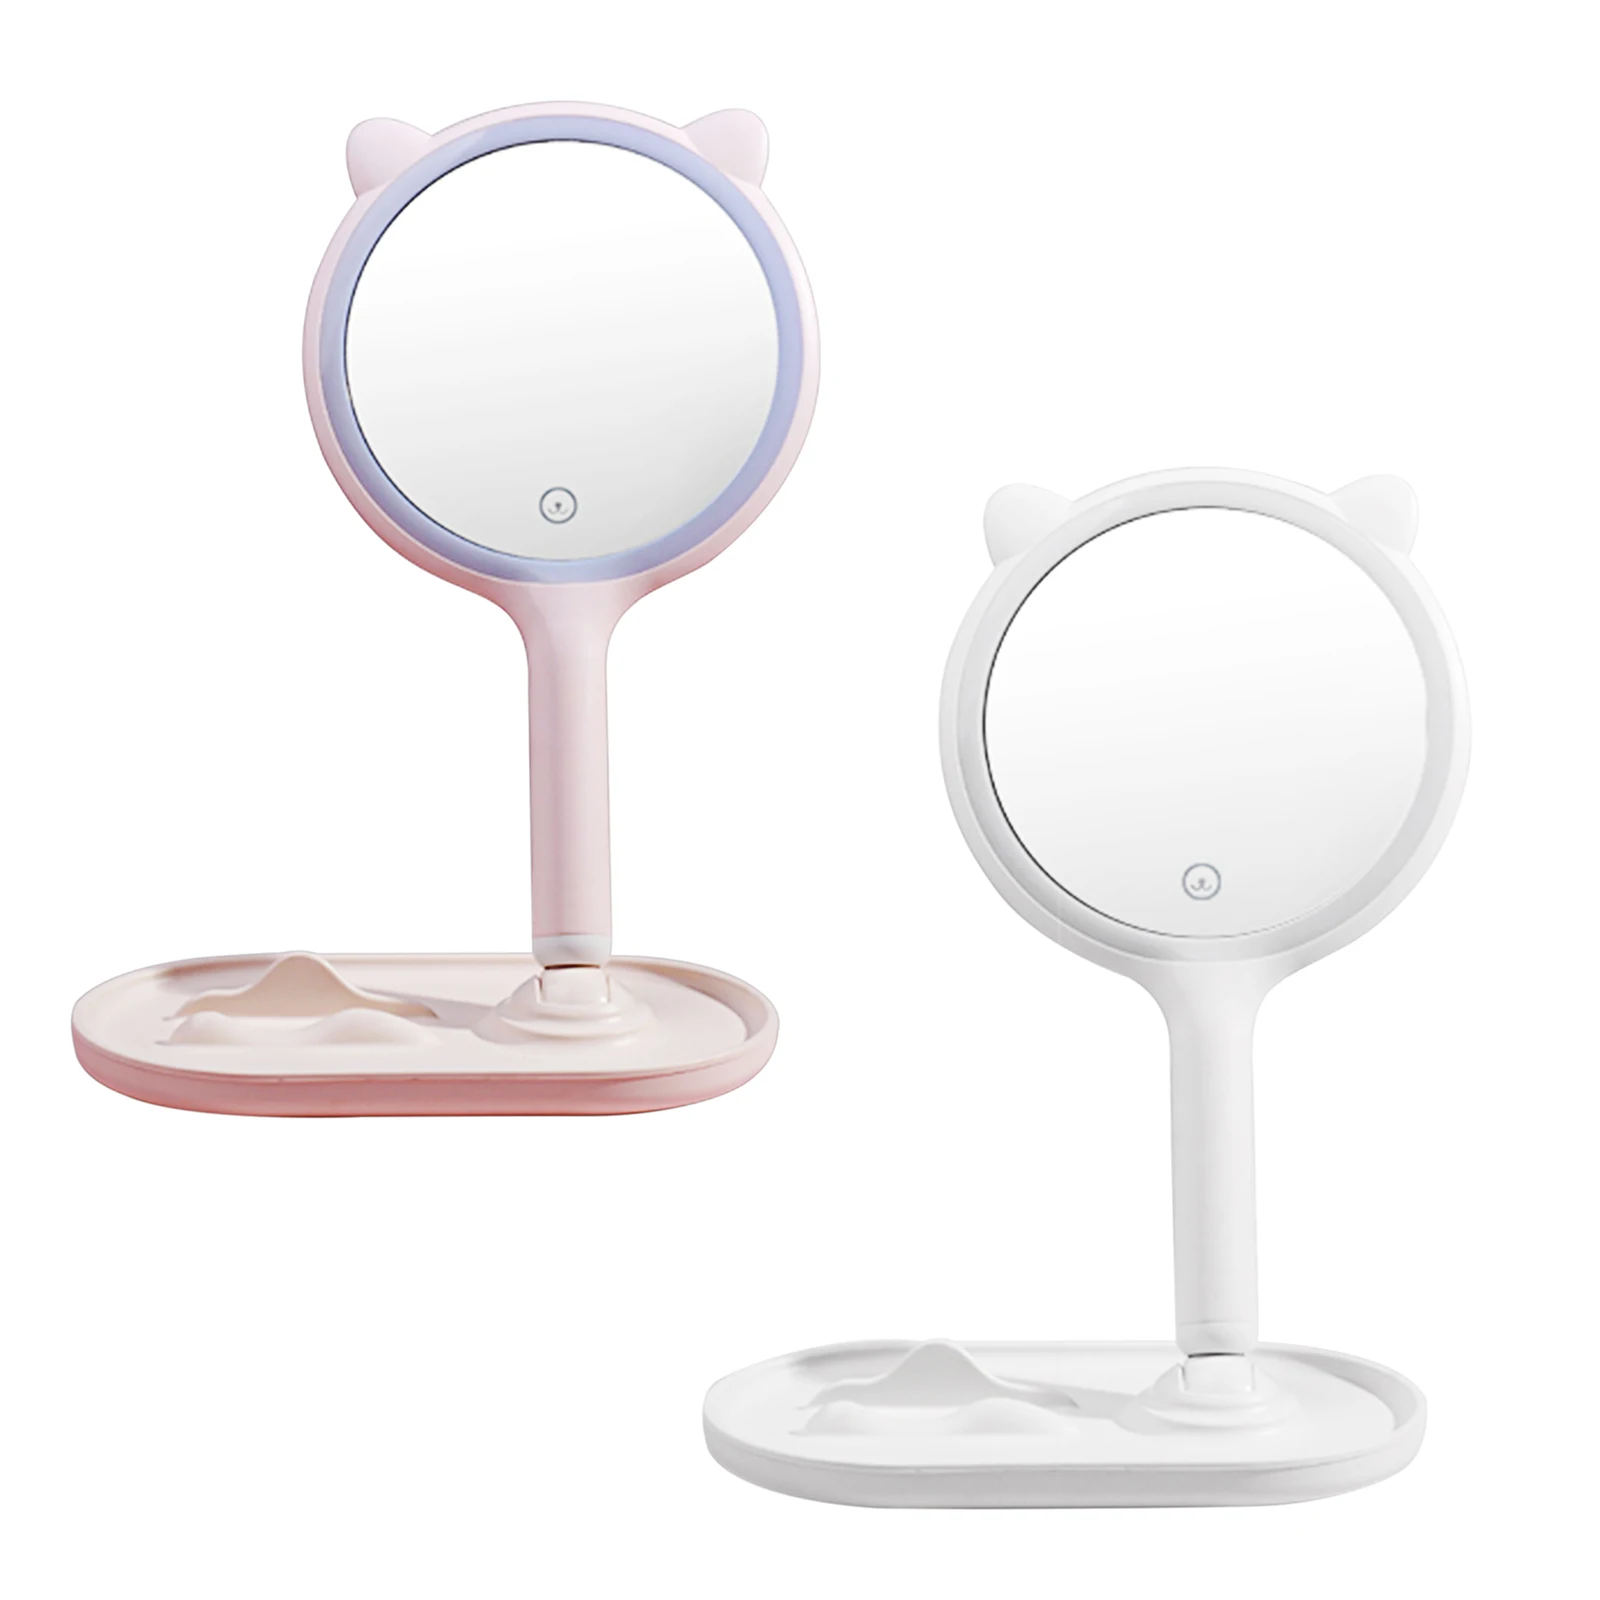 

Светодиодный светильник с зеркалом для макияжа для хранения регулируемое зеркало панель регулировки яркости подсветки USB светодиодный кос...